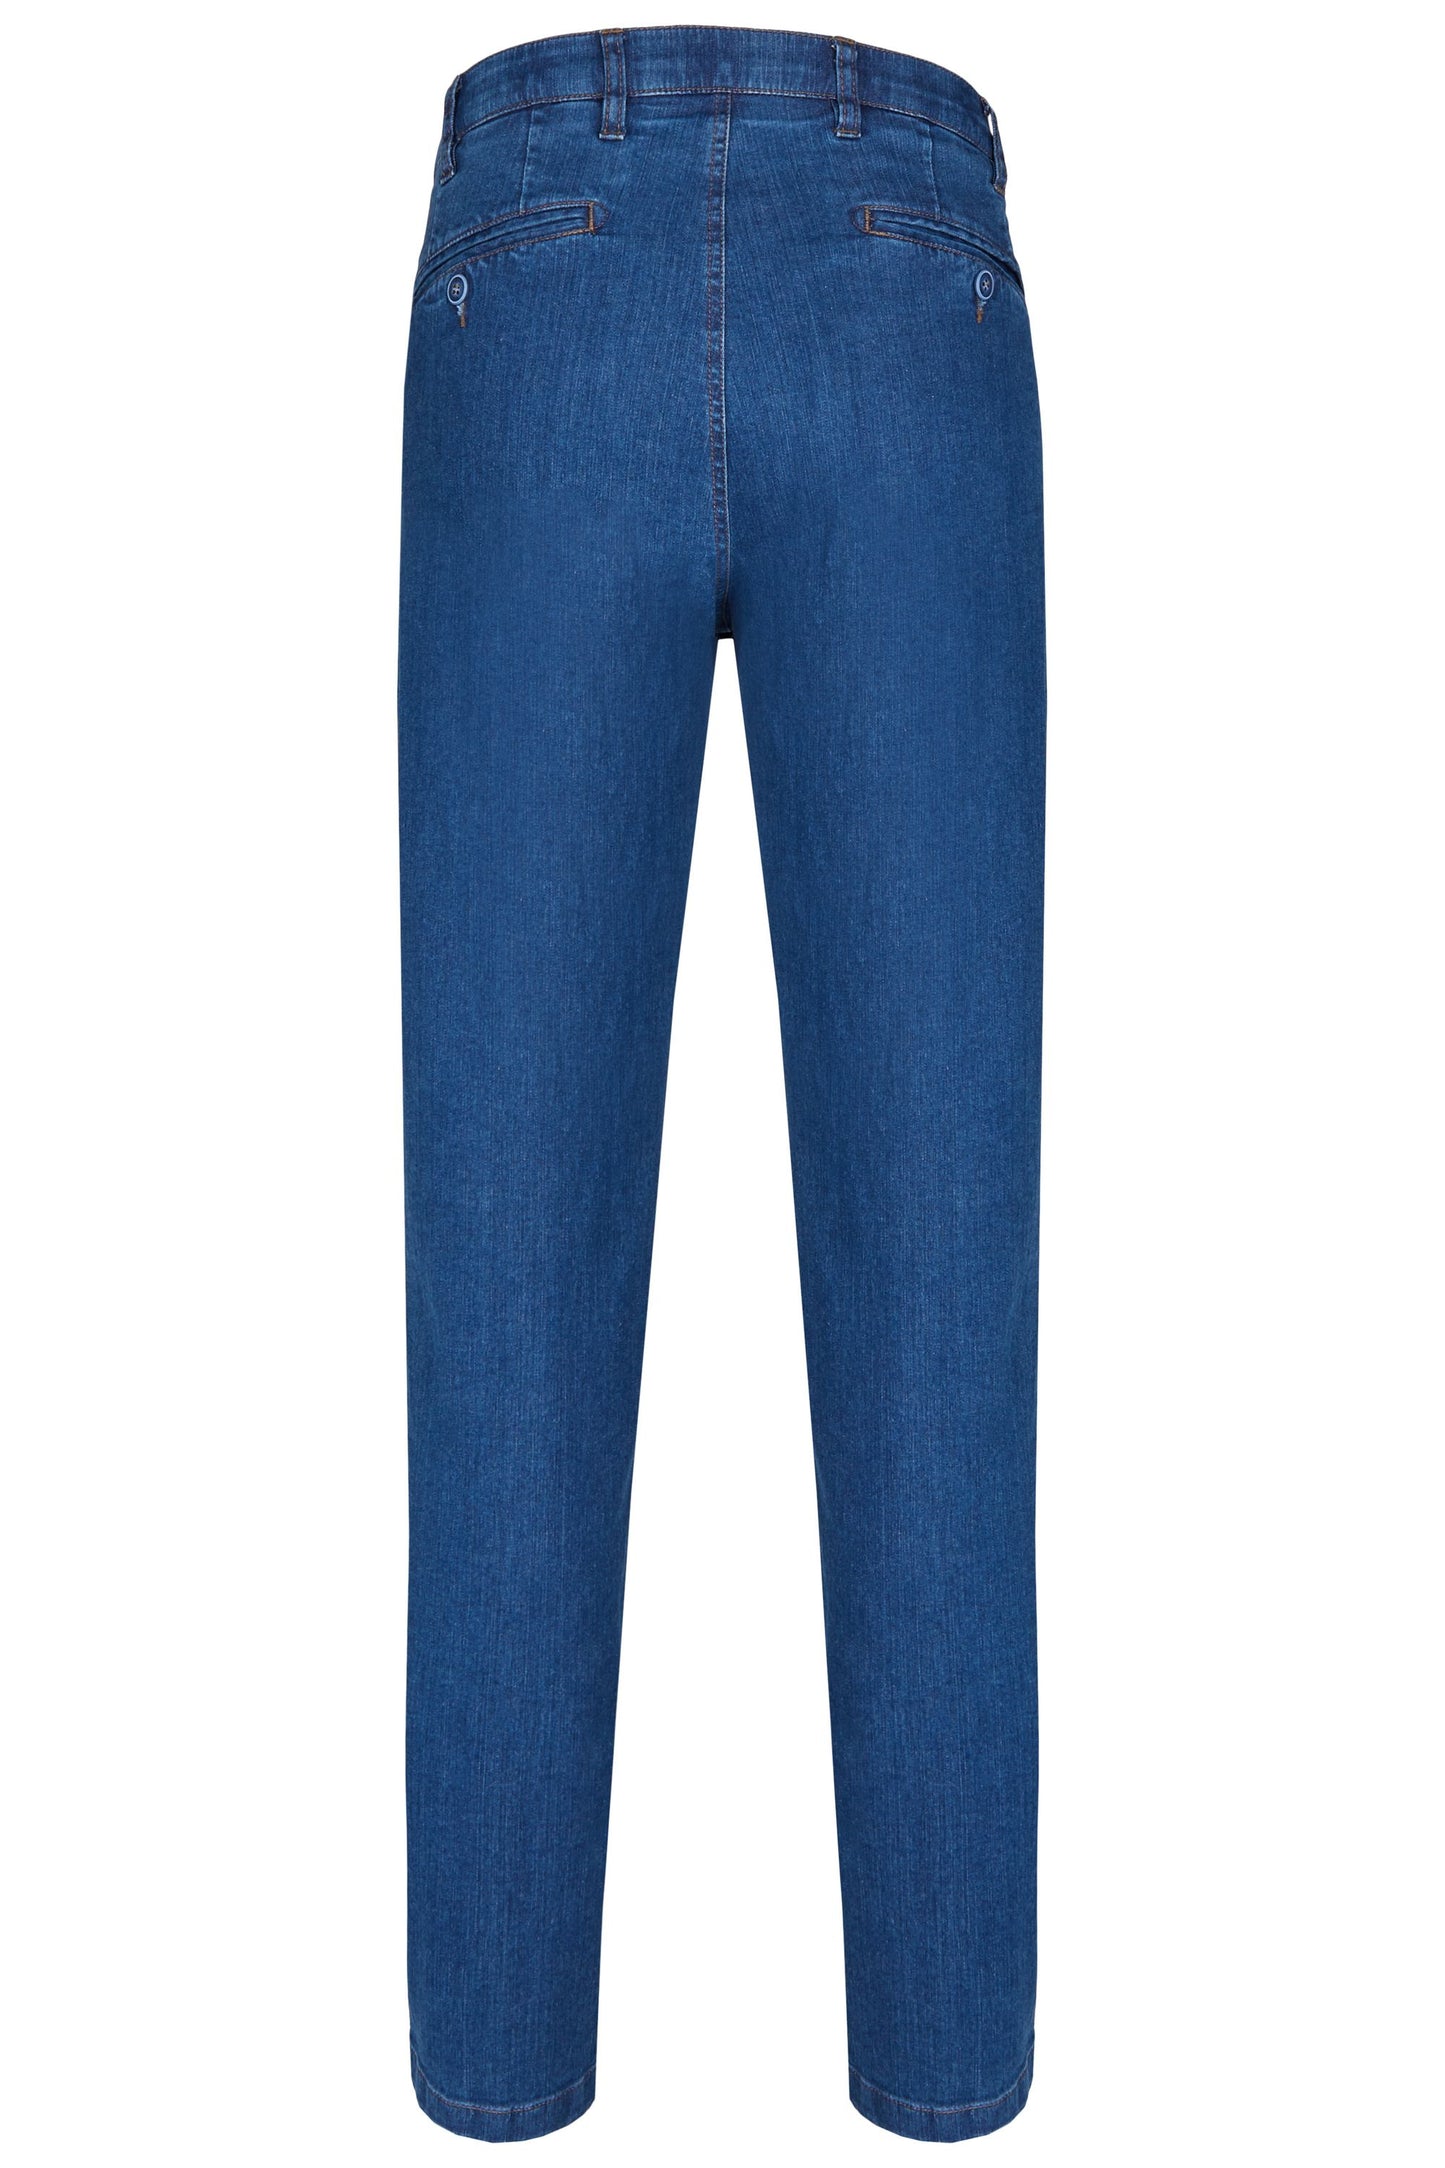 aubi Perfect Fit Herren Ganzjahres Jeans Hose Stretch aus Baumwolle High Flex Modell 577